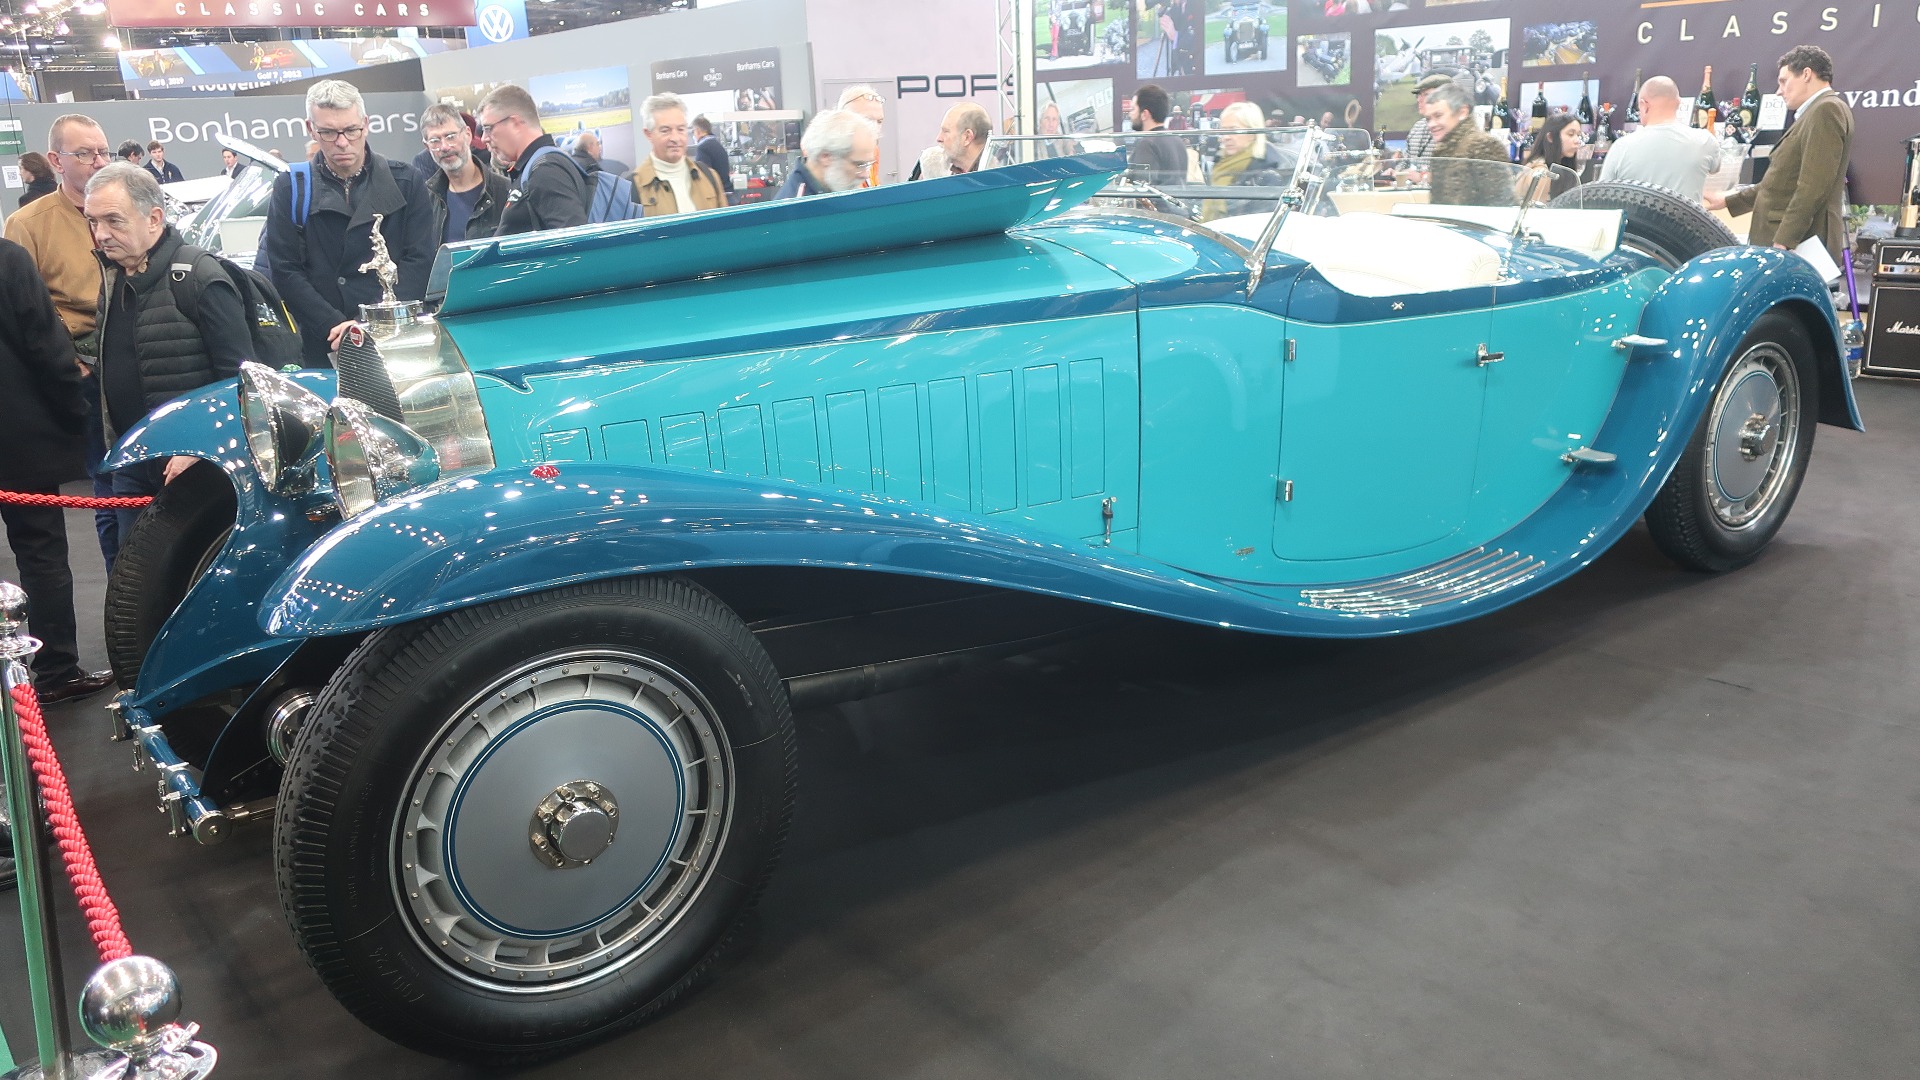 Mektigst av dem alle. Den fantastiske rekreasjonen av Armand Esders sin 1932 Bugatti Royale som ble designet av Jean Bugatti.